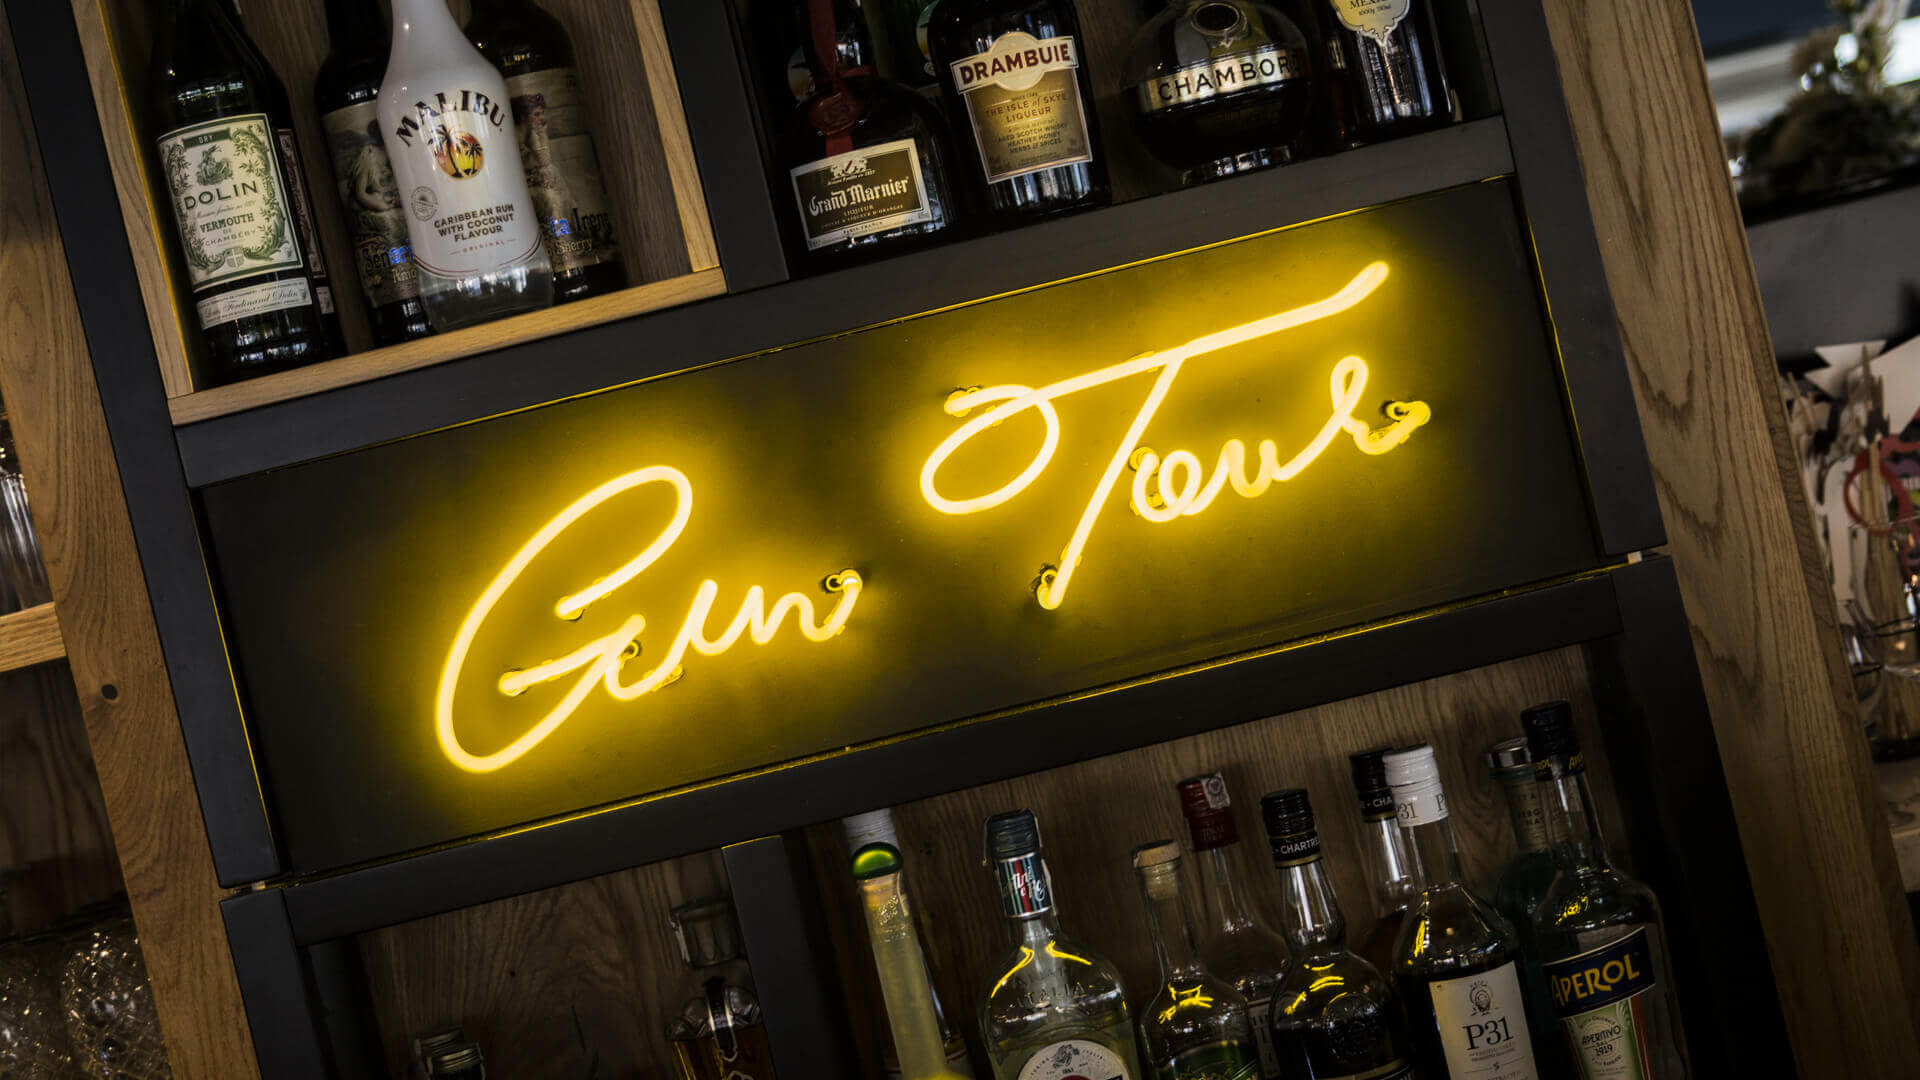 Gintur Gin tour - Gin-tour-neón-detrás-del-bar-en-restaurante-neón-en-la-pared-bajo-iluminación-en-cristal-blanco-neón-logo-de-la-empresa-neón-entre-botellas-szafarnia10-gdansk (21) 